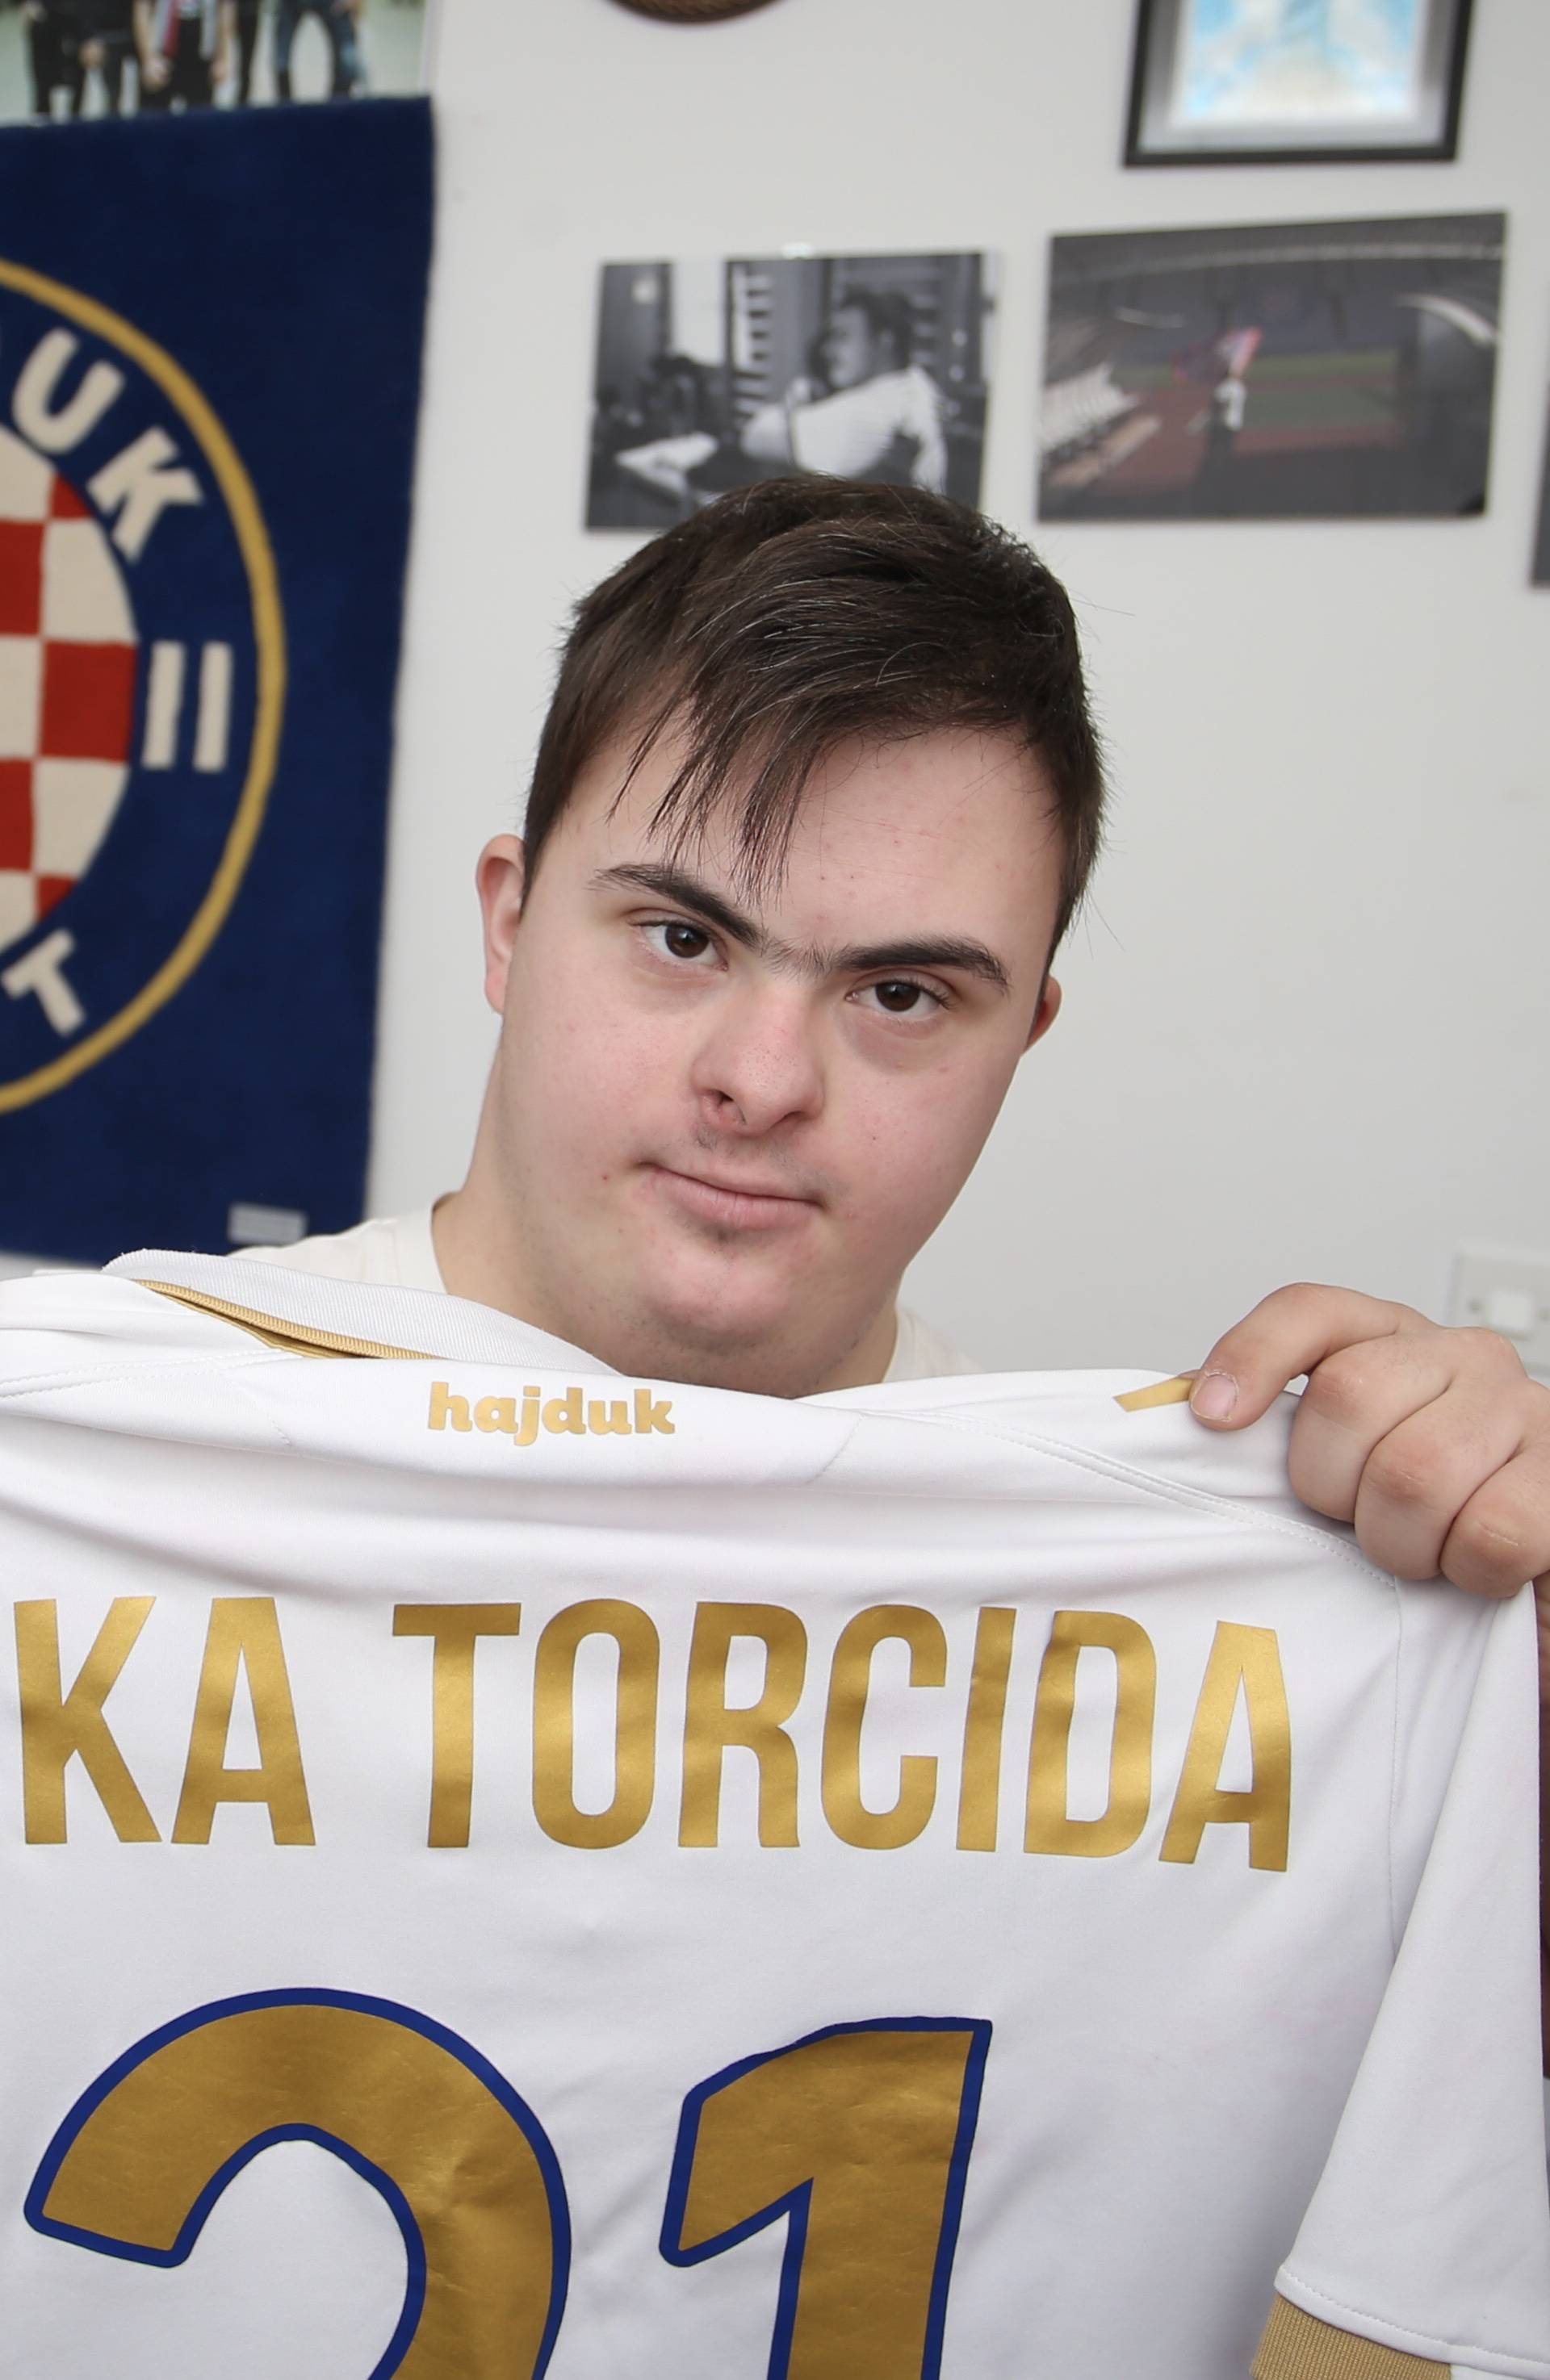 Luka dobio posao u Hajduku: Od uzbuđenja ne mogu spavati